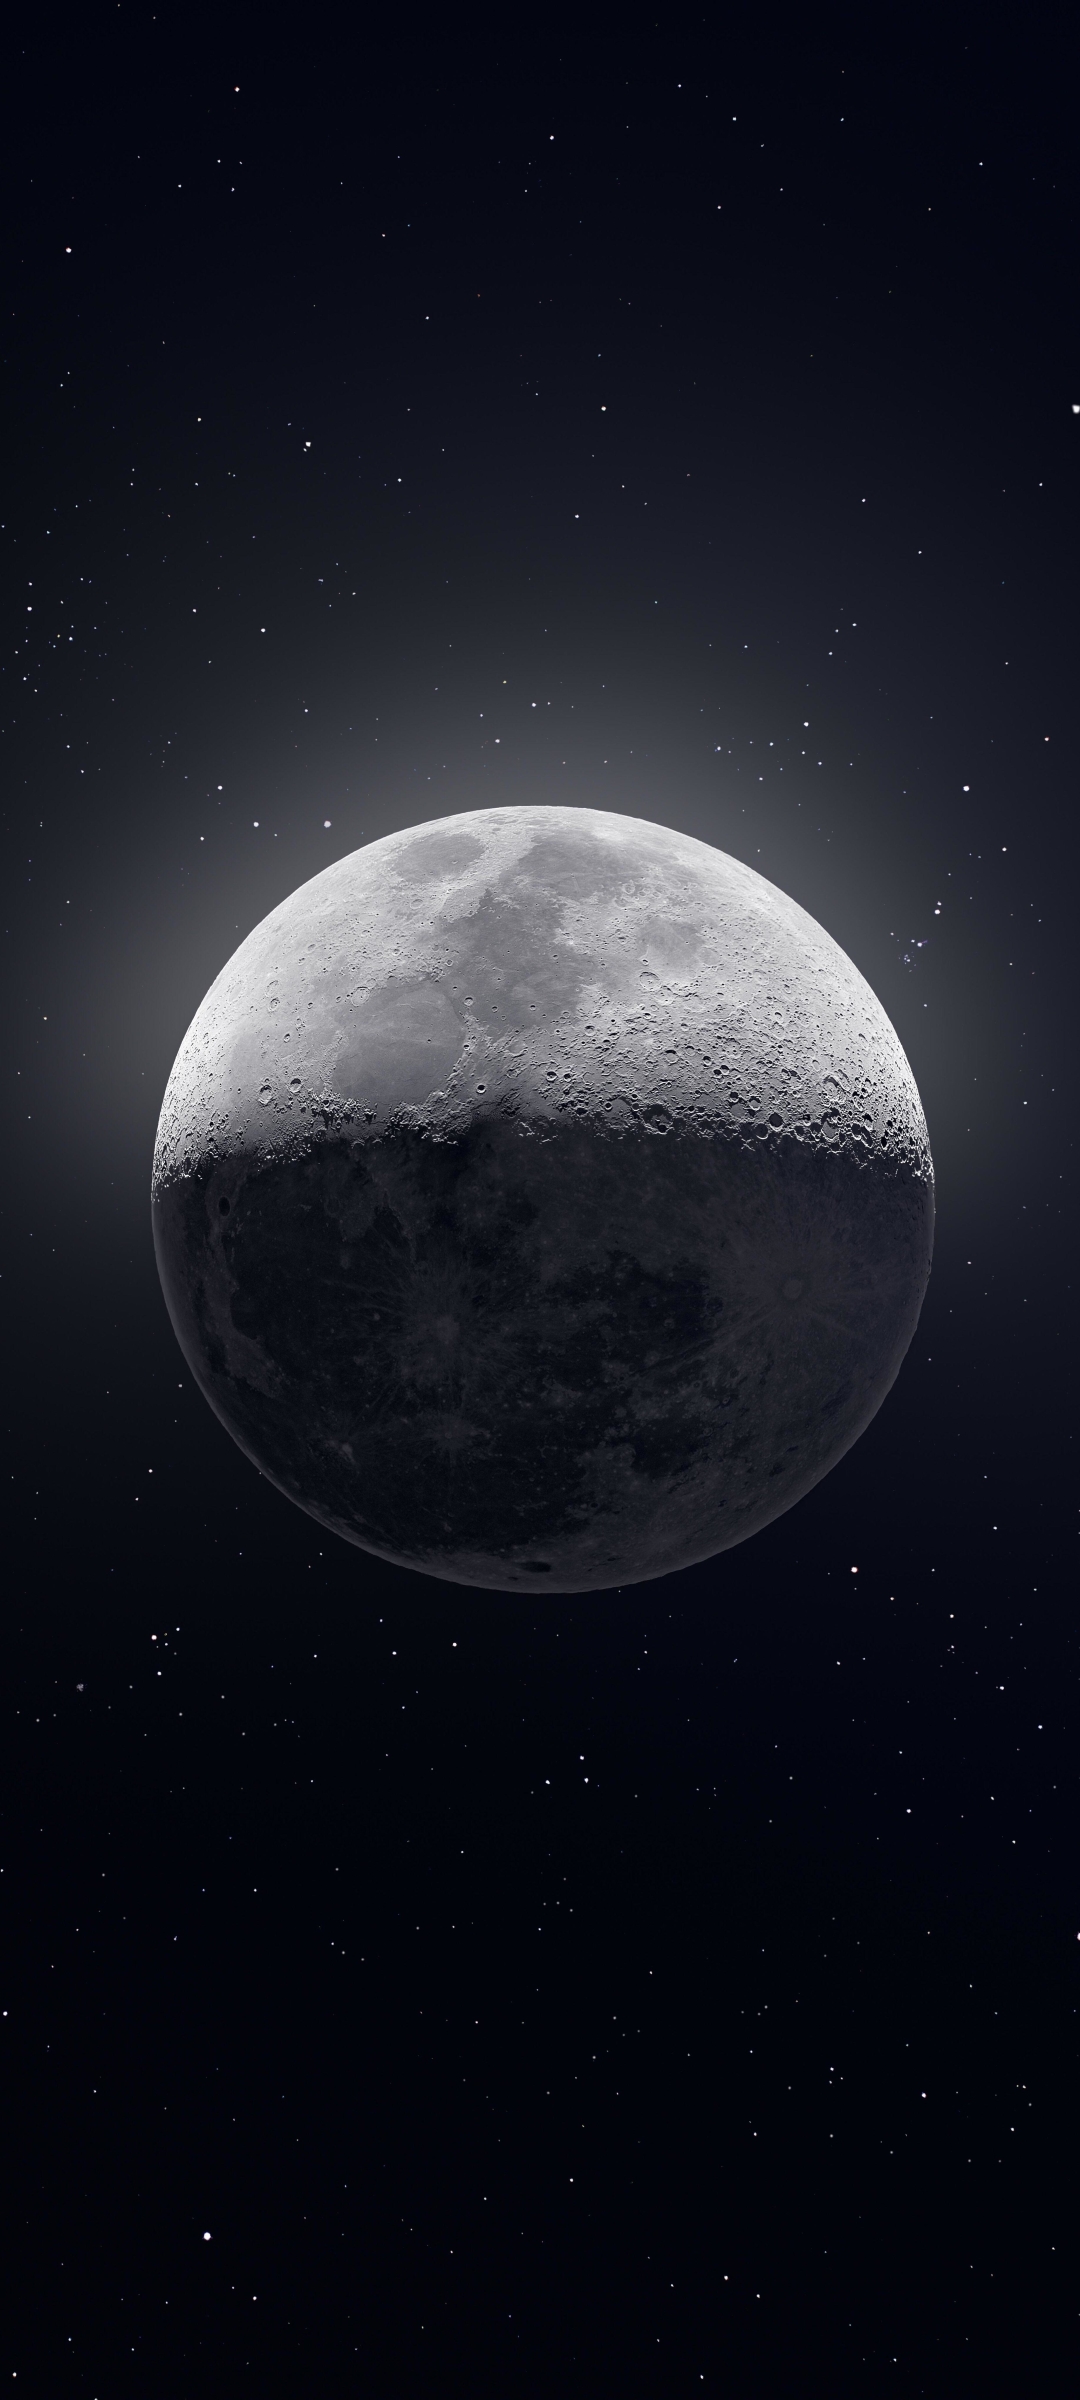 Mời bạn tải miễn phí những hình ảnh Mặt trăng tuyệt đẹp với độ phân giải 4K và độ phân giải 1080x2400 để có những trải nghiệm hình ảnh chân thực nhất. Với chất lượng hình ảnh tuyệt vời này, bạn sẽ cảm thấy như mình đang ở ngay trên bề mặt Mặt trăng.